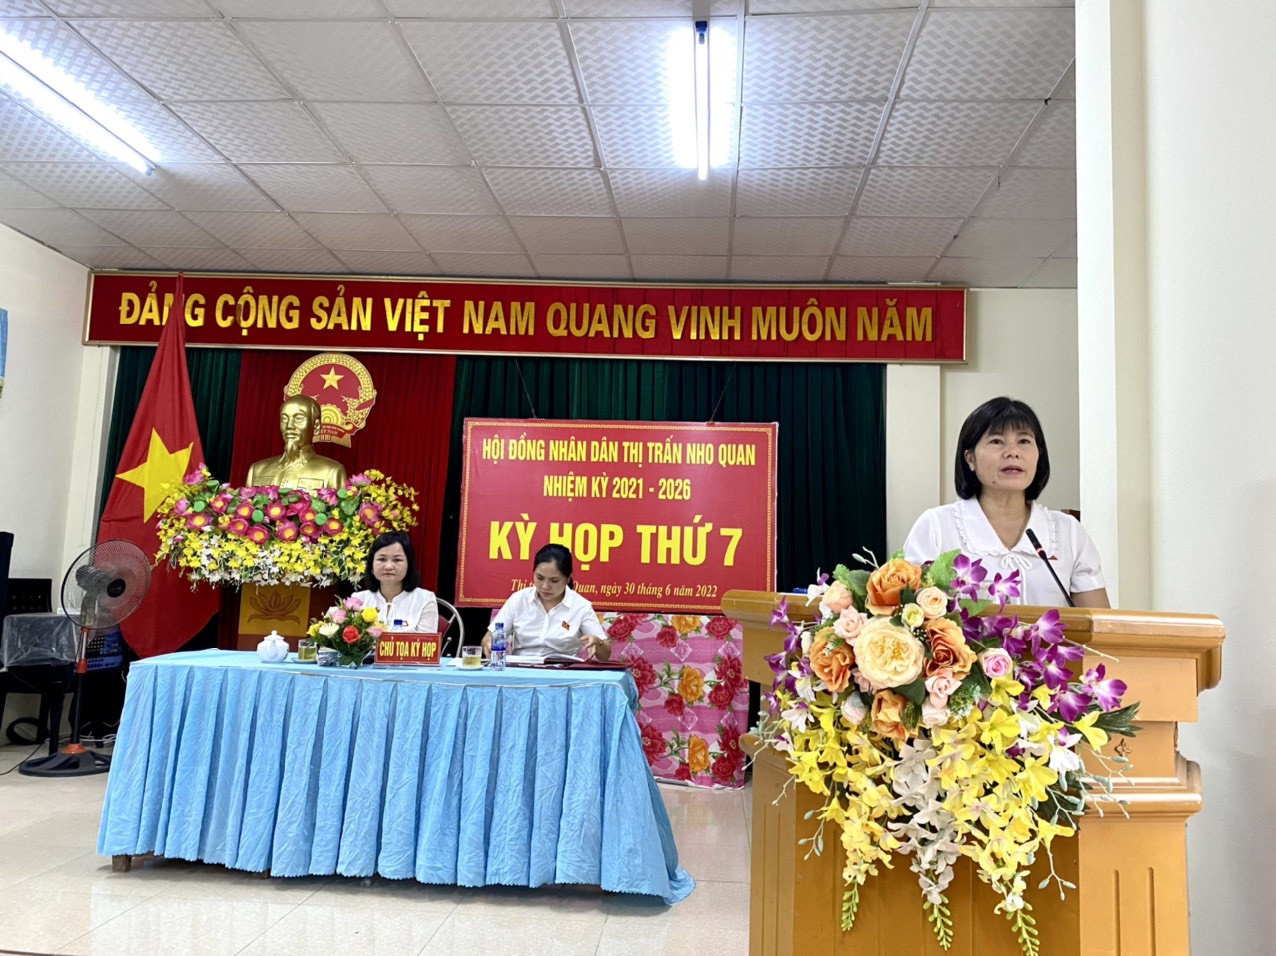 Kỳ họp thứ 7 HĐND thị trấn Nho Quan, nhiệm kỳ 2021 - 2026.